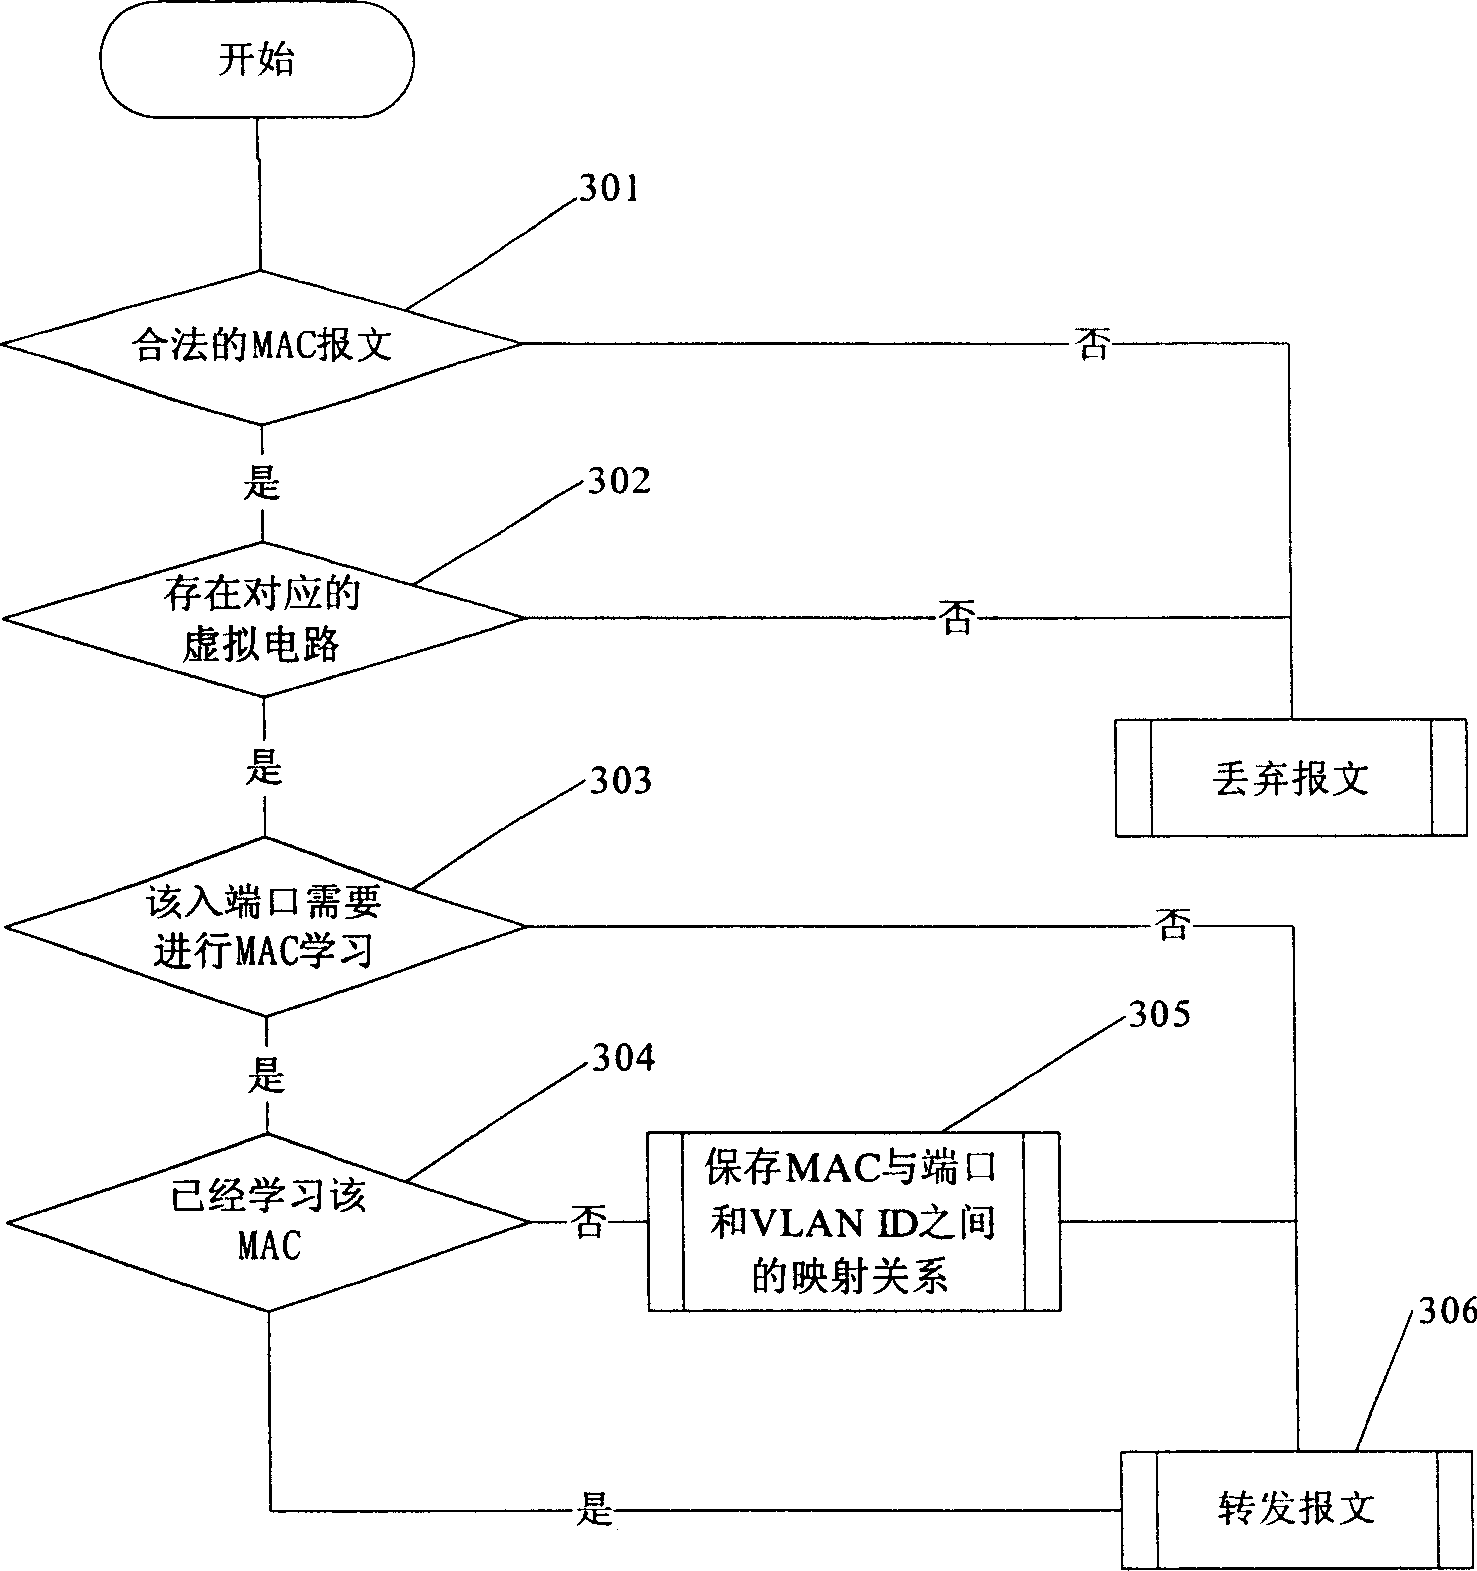 Virtual circuit exchanging method based on MAC studying